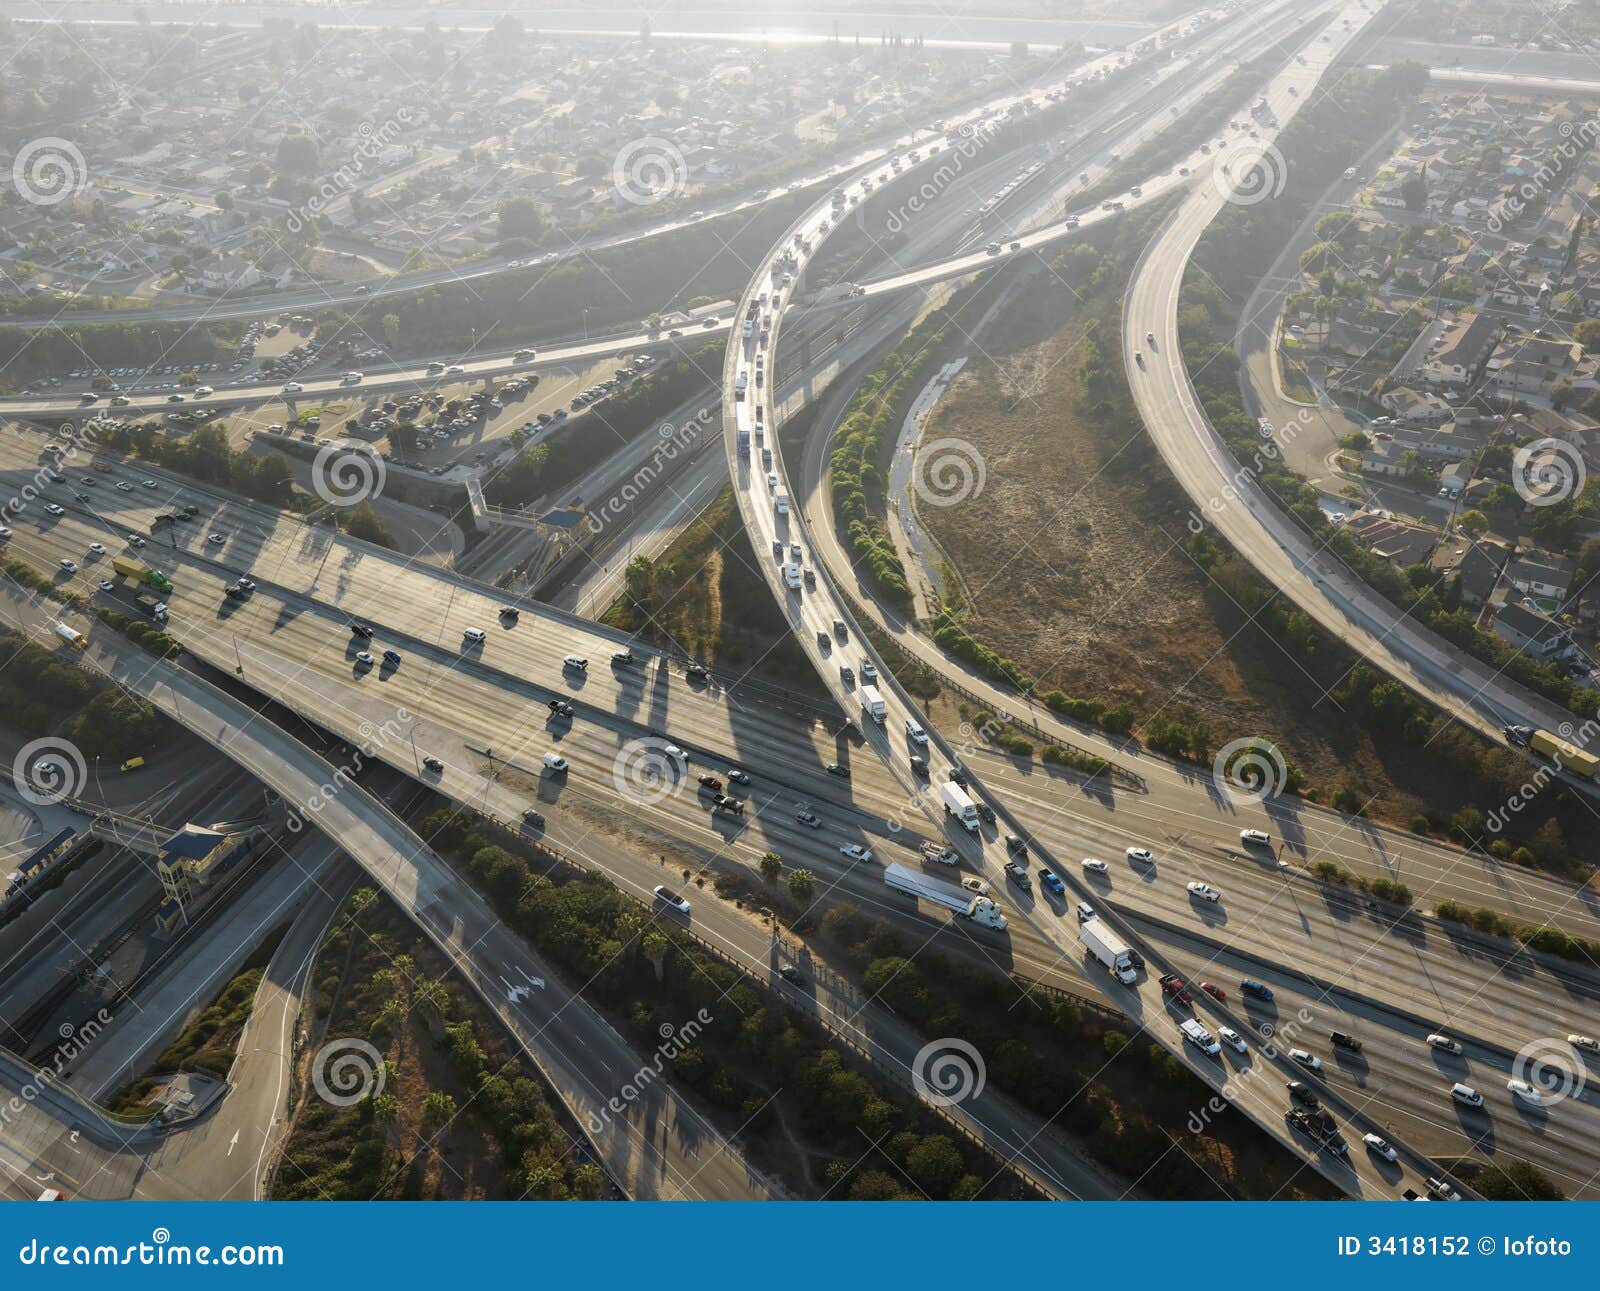 highway interchange.